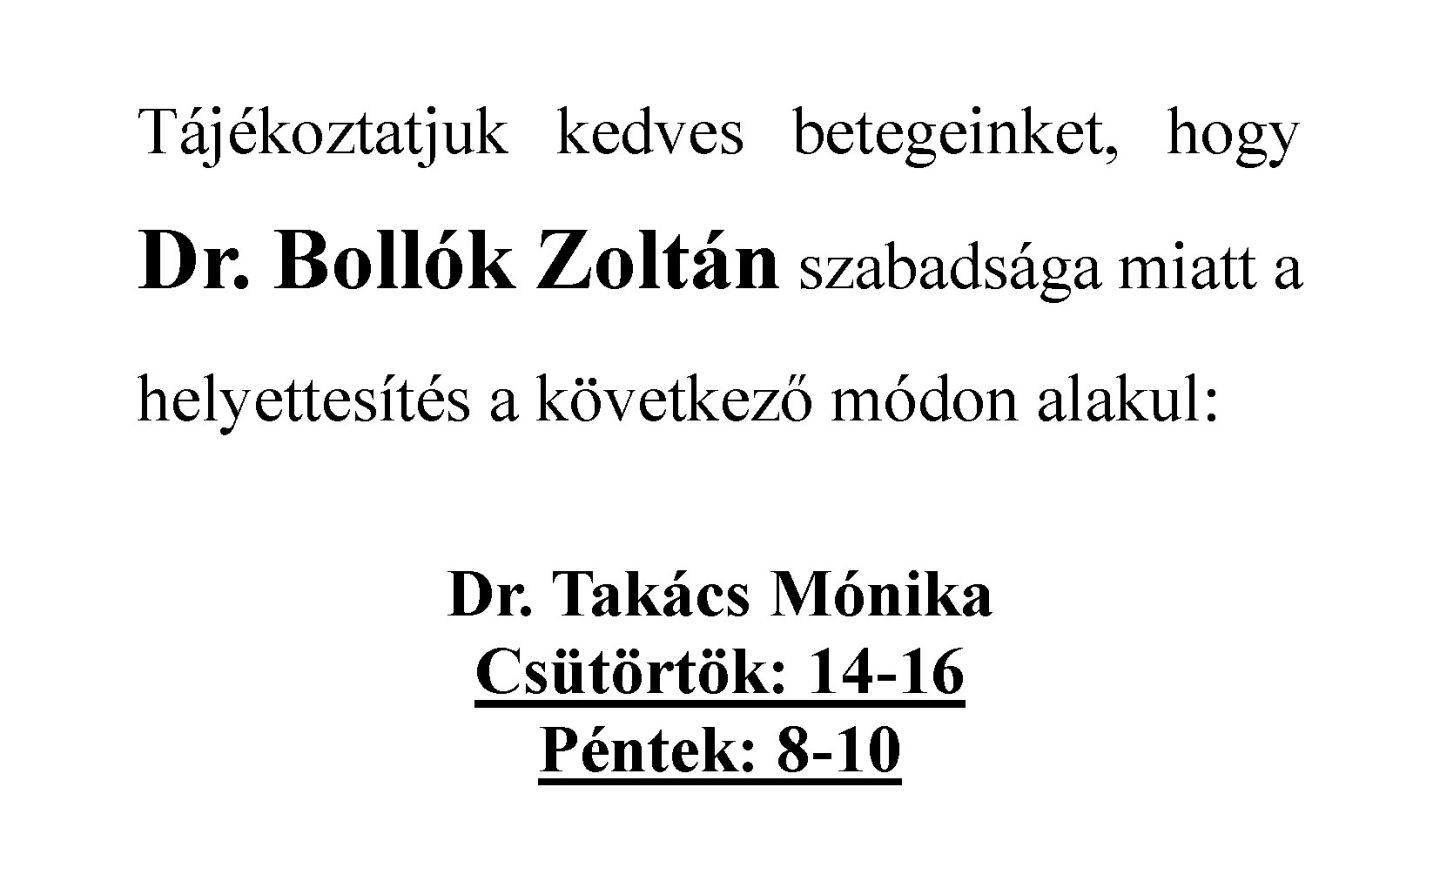 Tájékoztatjuk kedves betegeinket, hogy Dr. Bollók Zoltán szabadsága miatt a helyettesítés a következő módon alakul:  Dr. Takács Mónika Csütörtök: 14-16 Péntek: 8-10